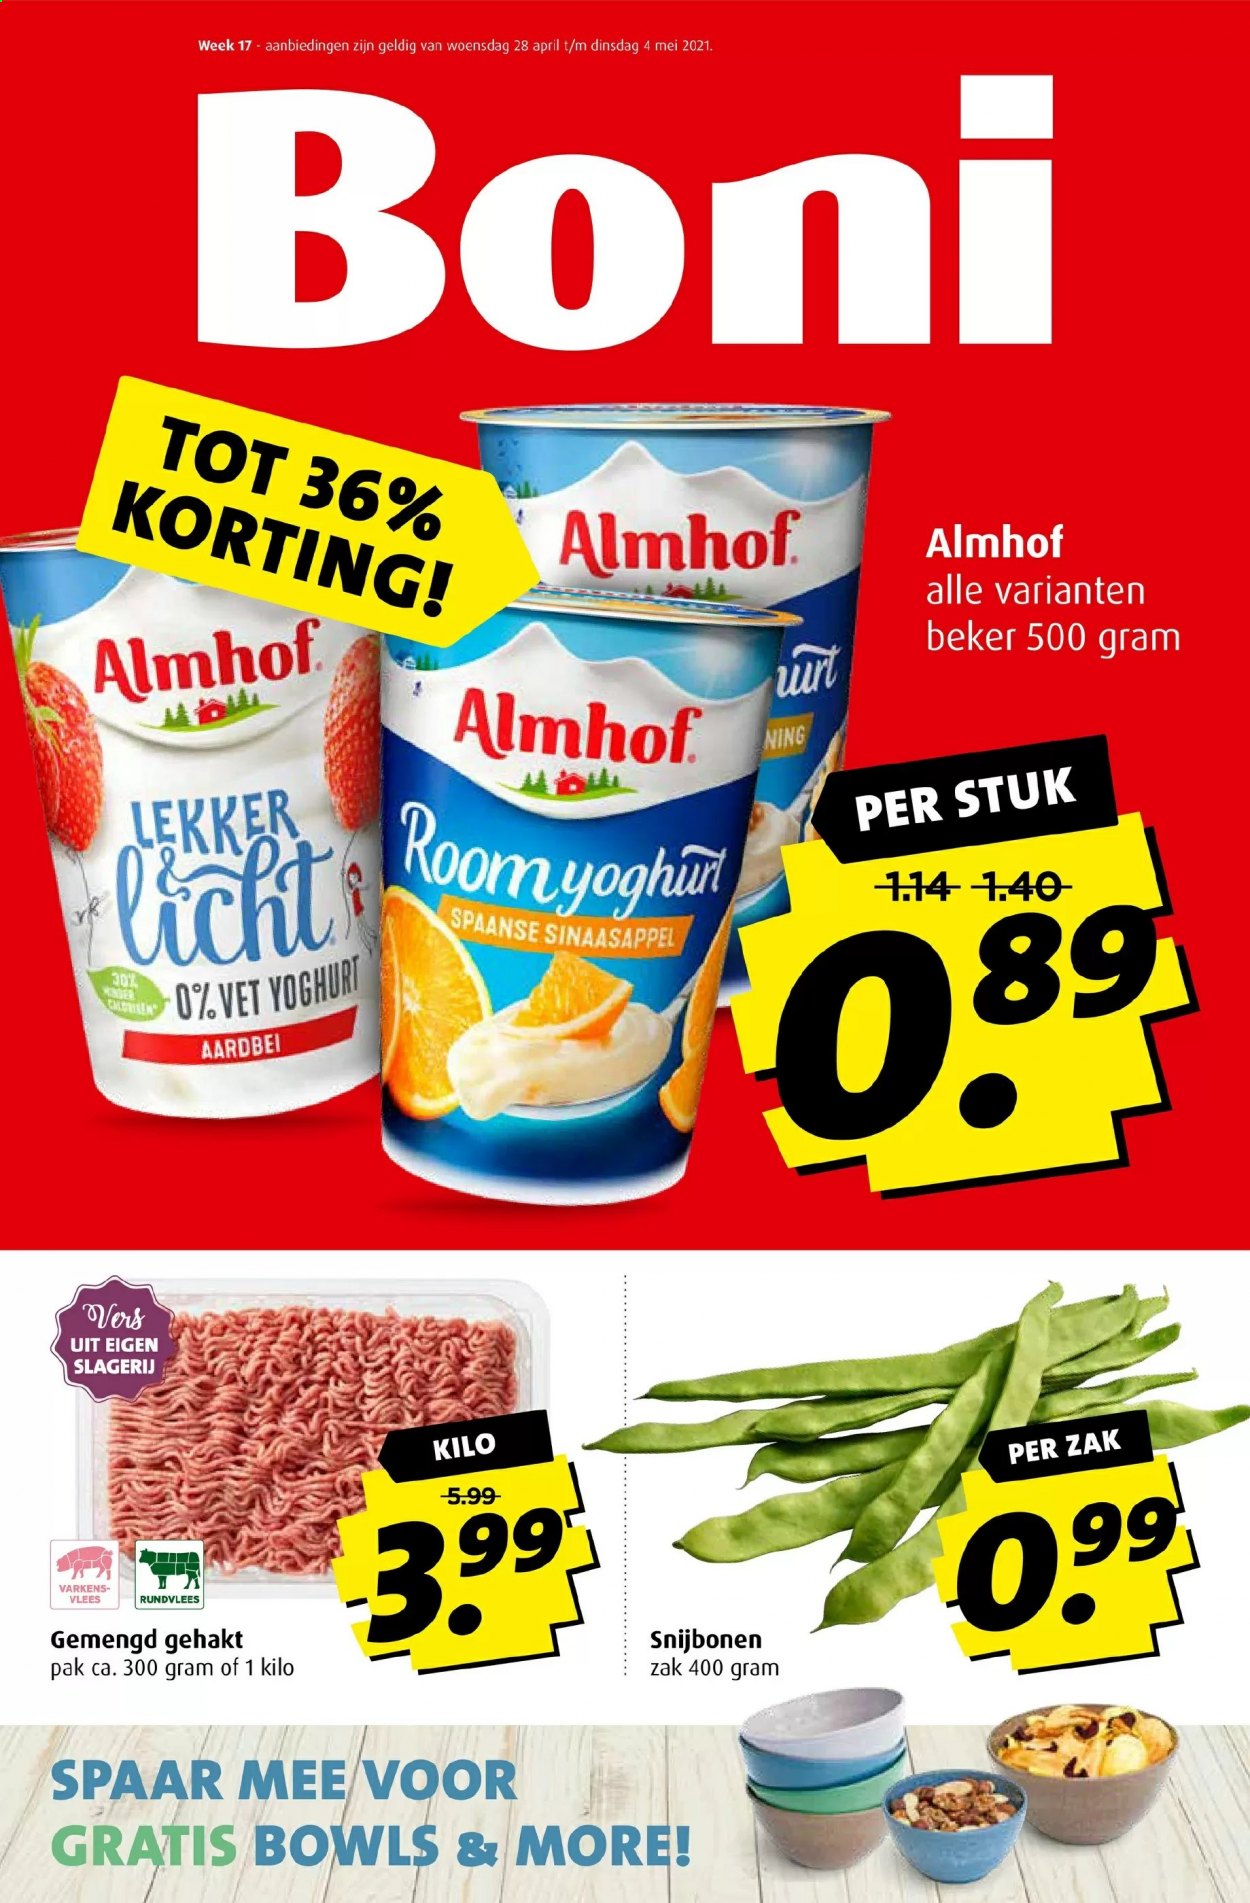 thumbnail - Boni-aanbieding - 28-4-2021 - 4-5-2021 -  producten in de aanbieding - snijbonen, sinaasappels, rundvlees, yoghurt. Pagina 1.